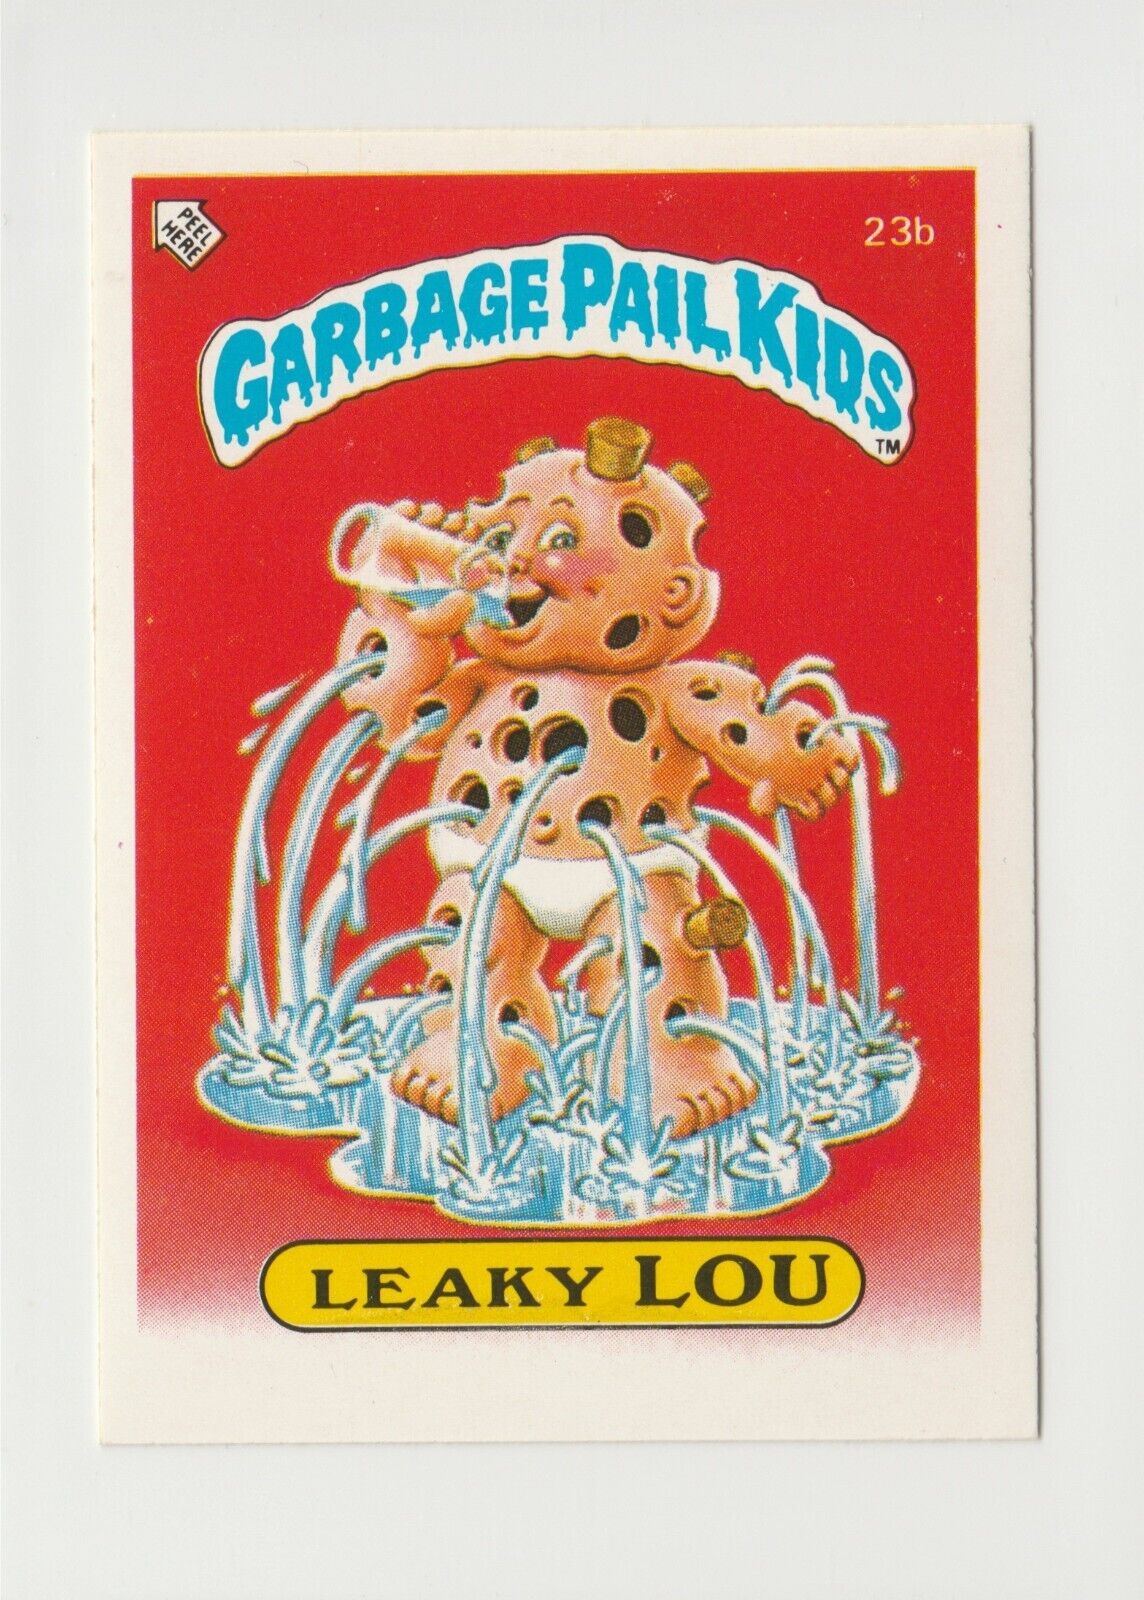 Garbage Pail Kids GPK UK mini Leaky Lou vintage 1985 British Series 1